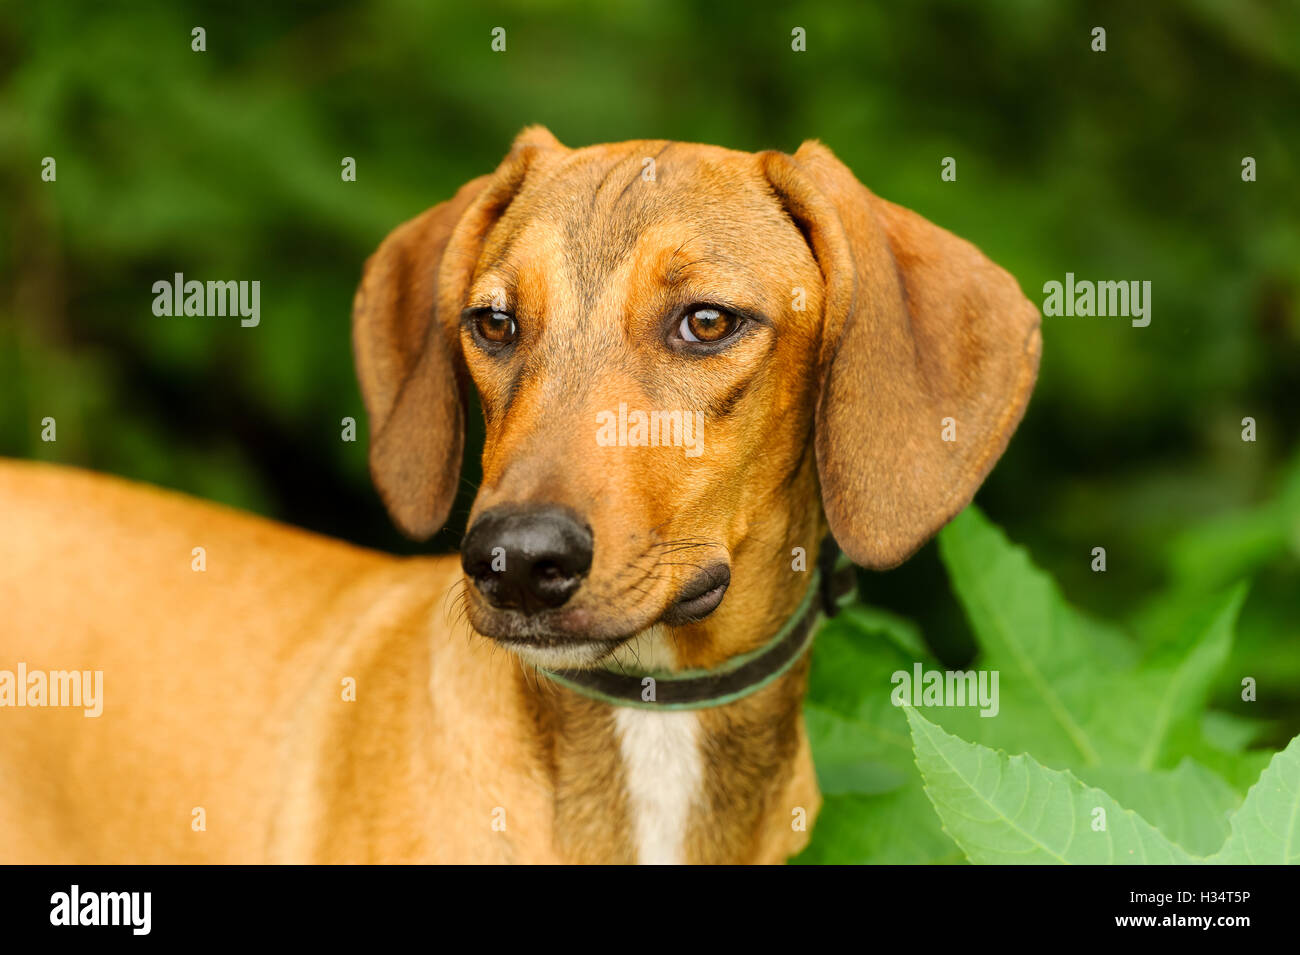 Cara de perro sabueso es un hermoso perro mirando muy sereno como él es al aire libre en la naturaleza. Foto de stock